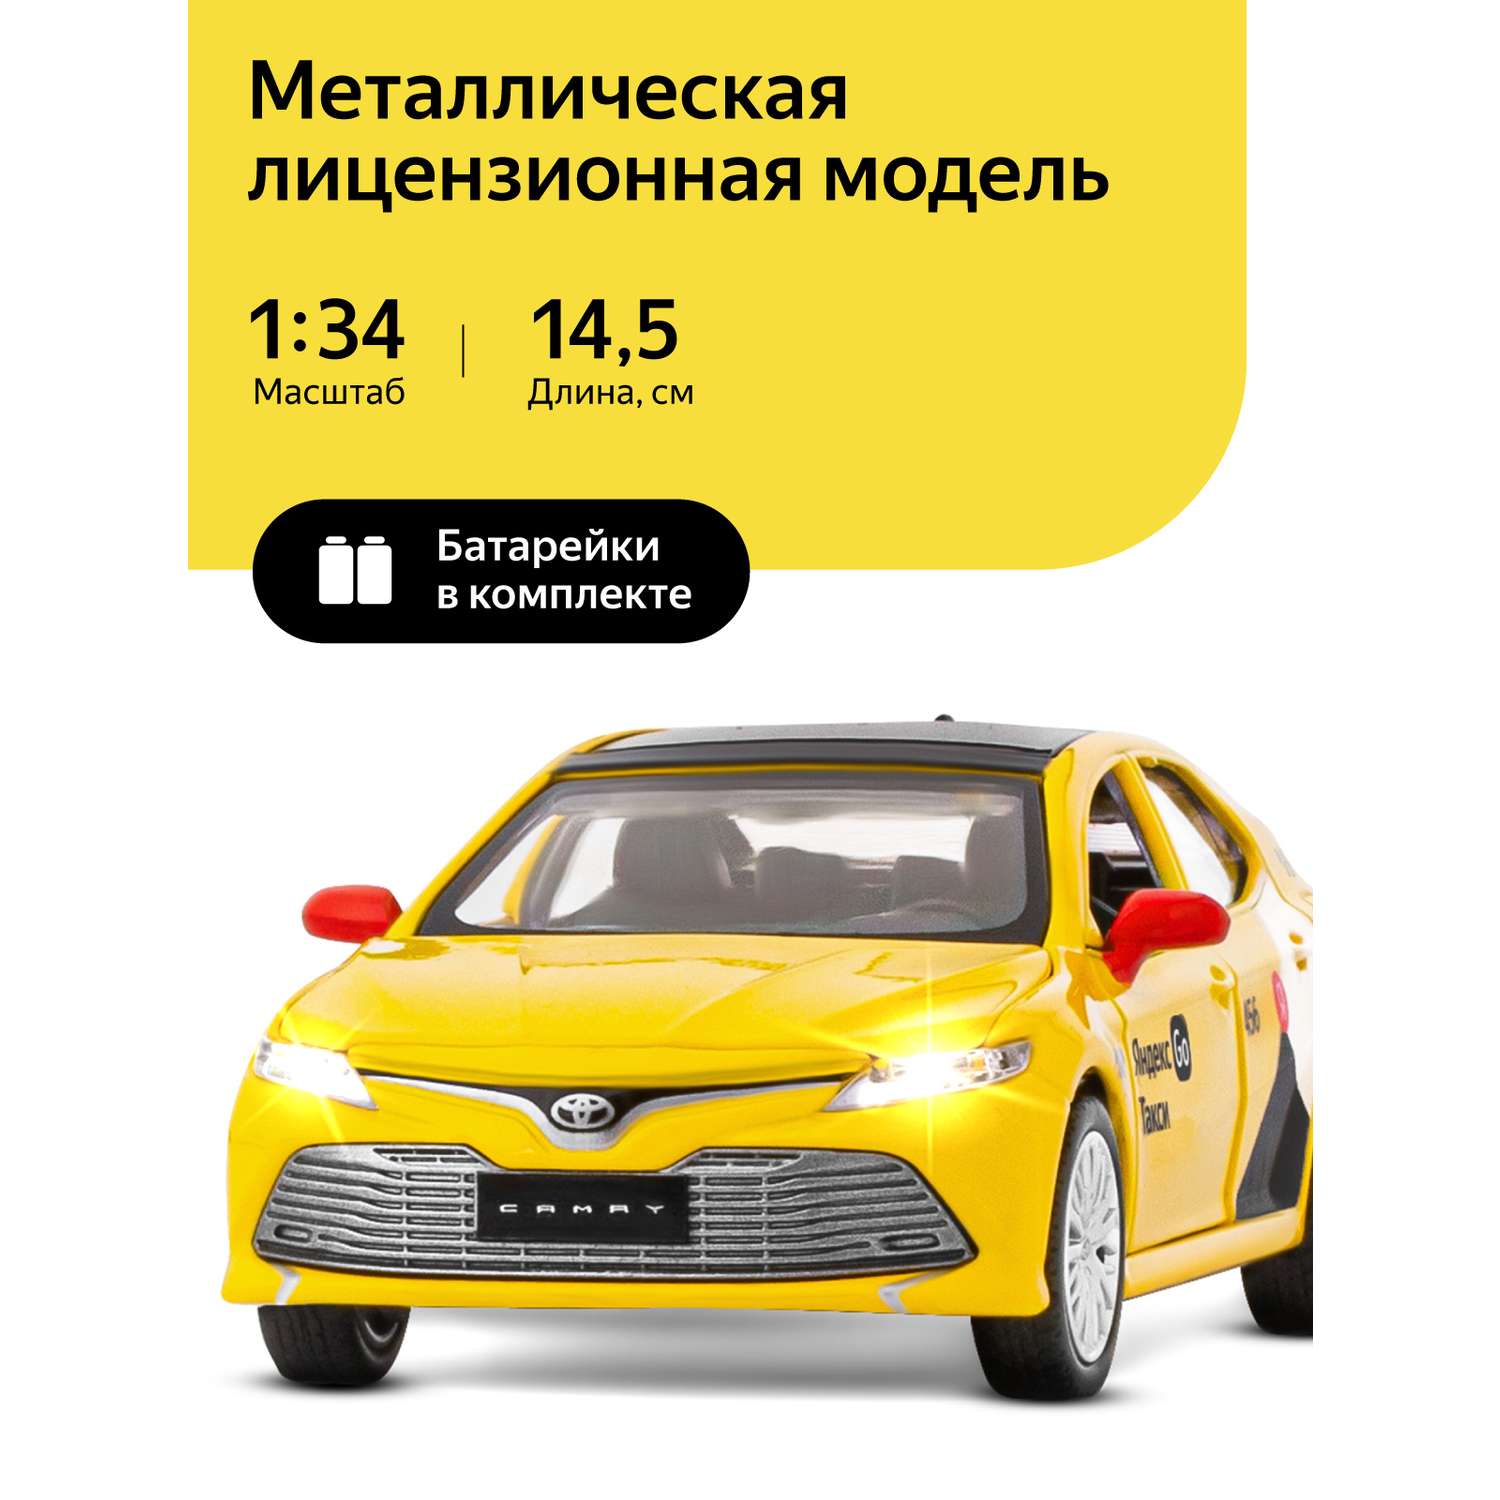 Машинка металлическая Яндекс GO игрушка детская Toyota Camry цвет желтый JB1251482 - фото 1